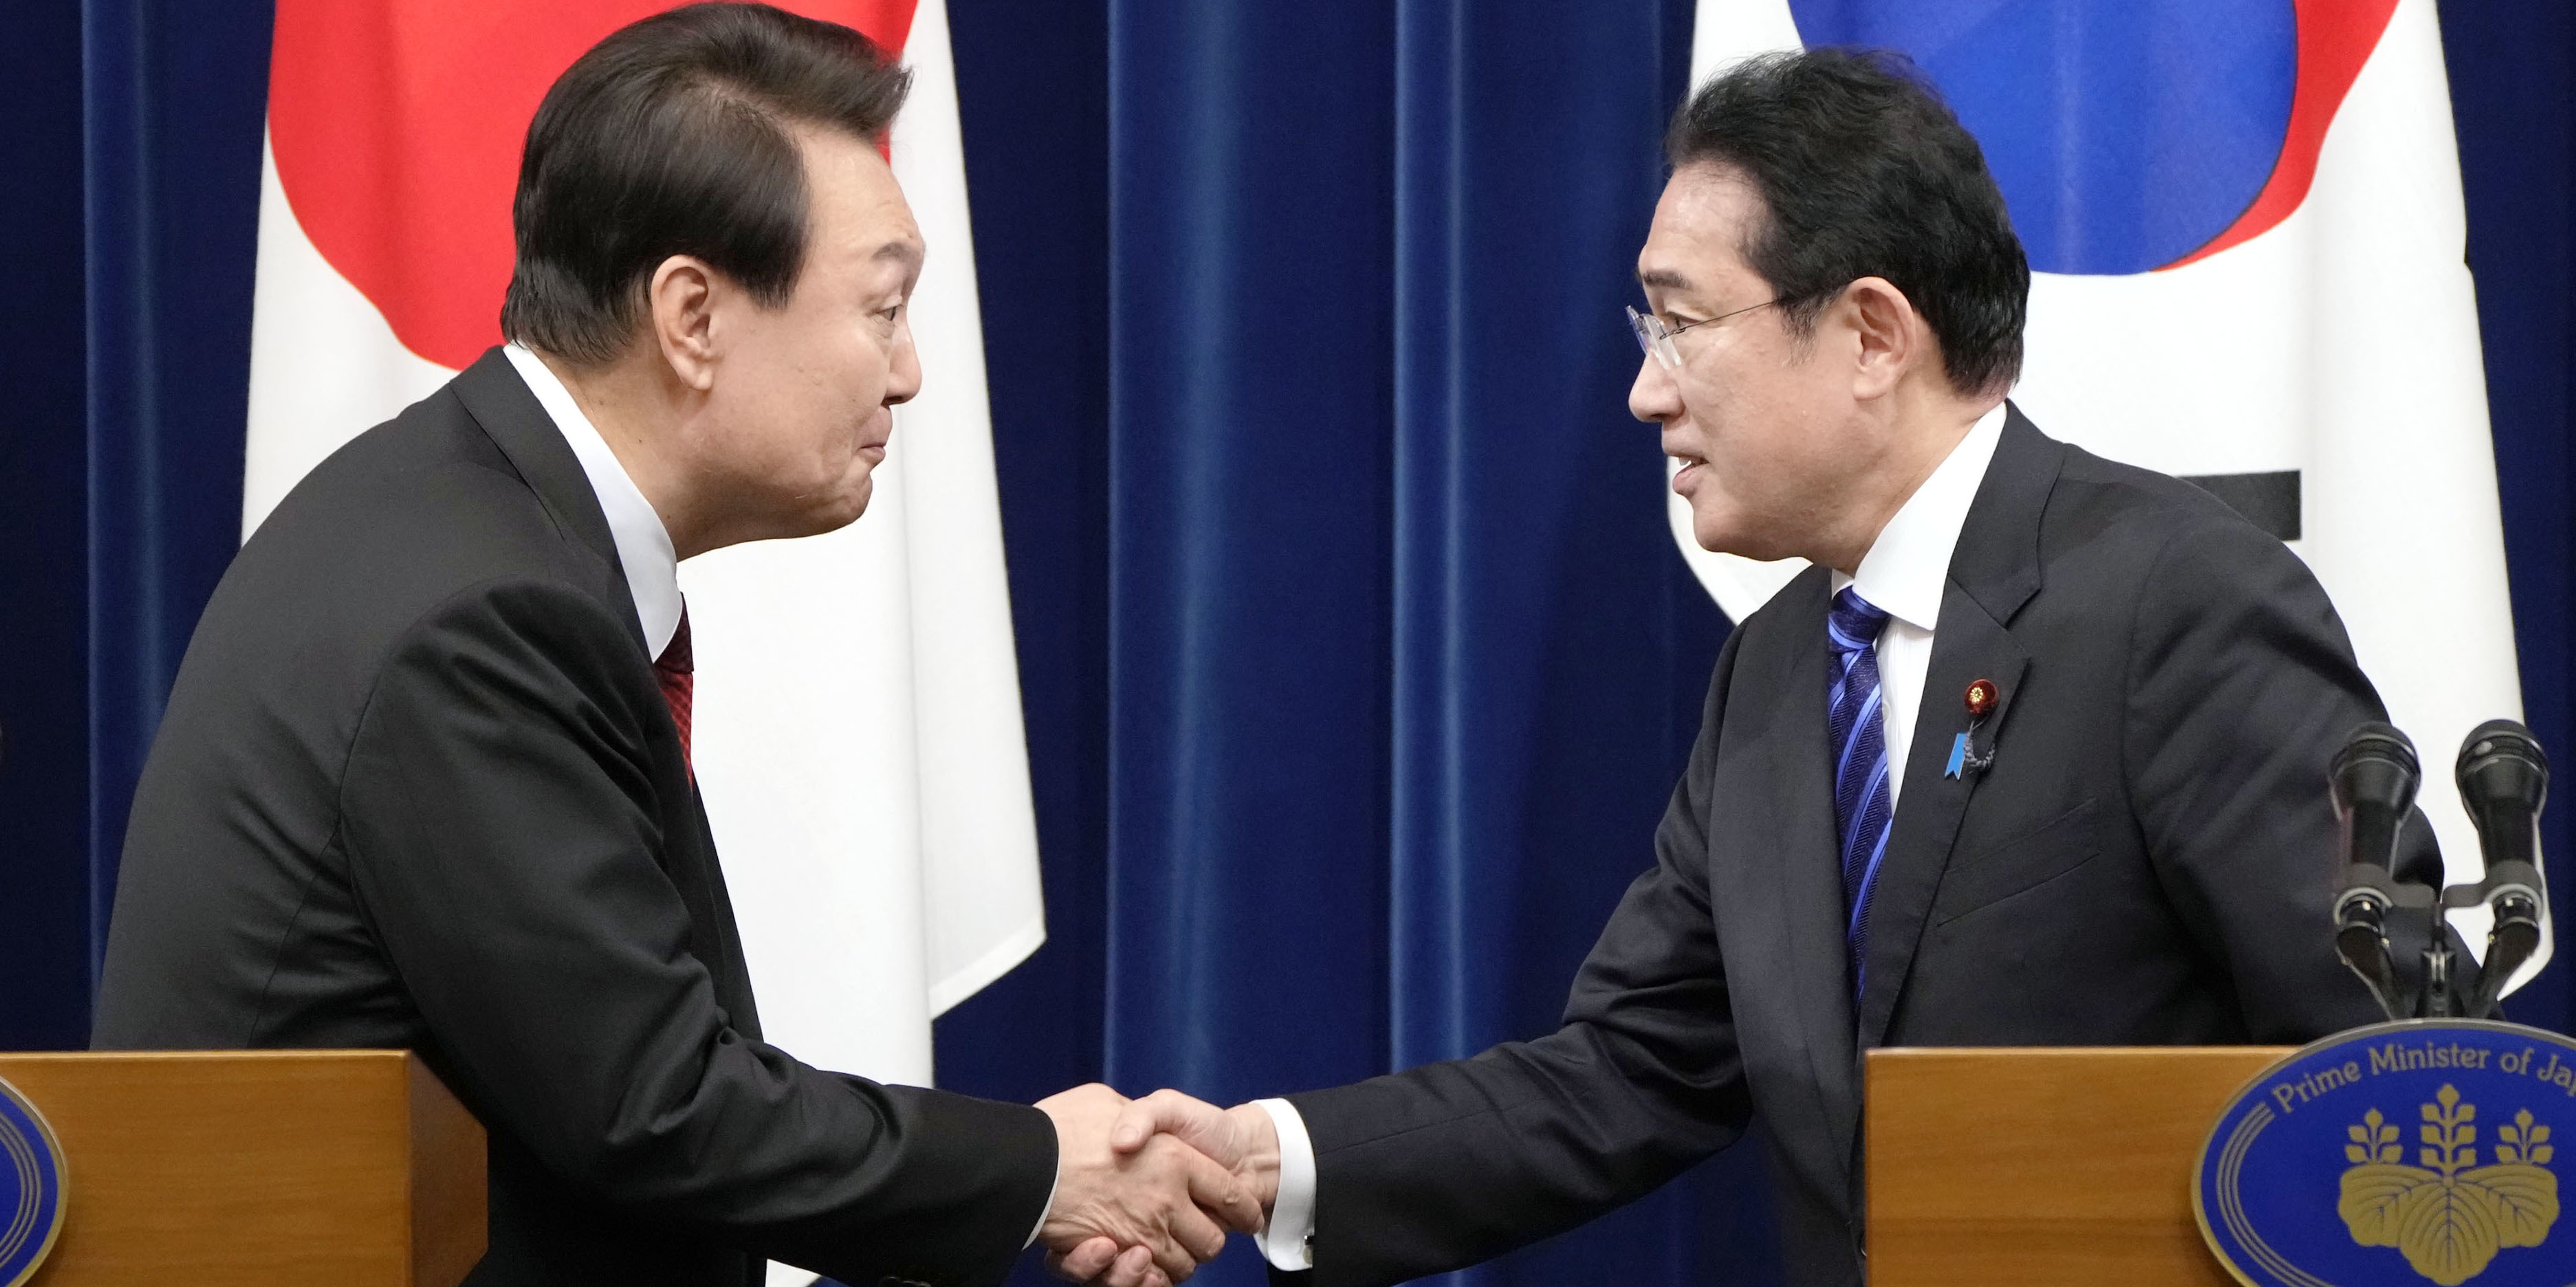 Chine, Japon et Corée du Sud se rencontrent dans un climat géopolitique tendu